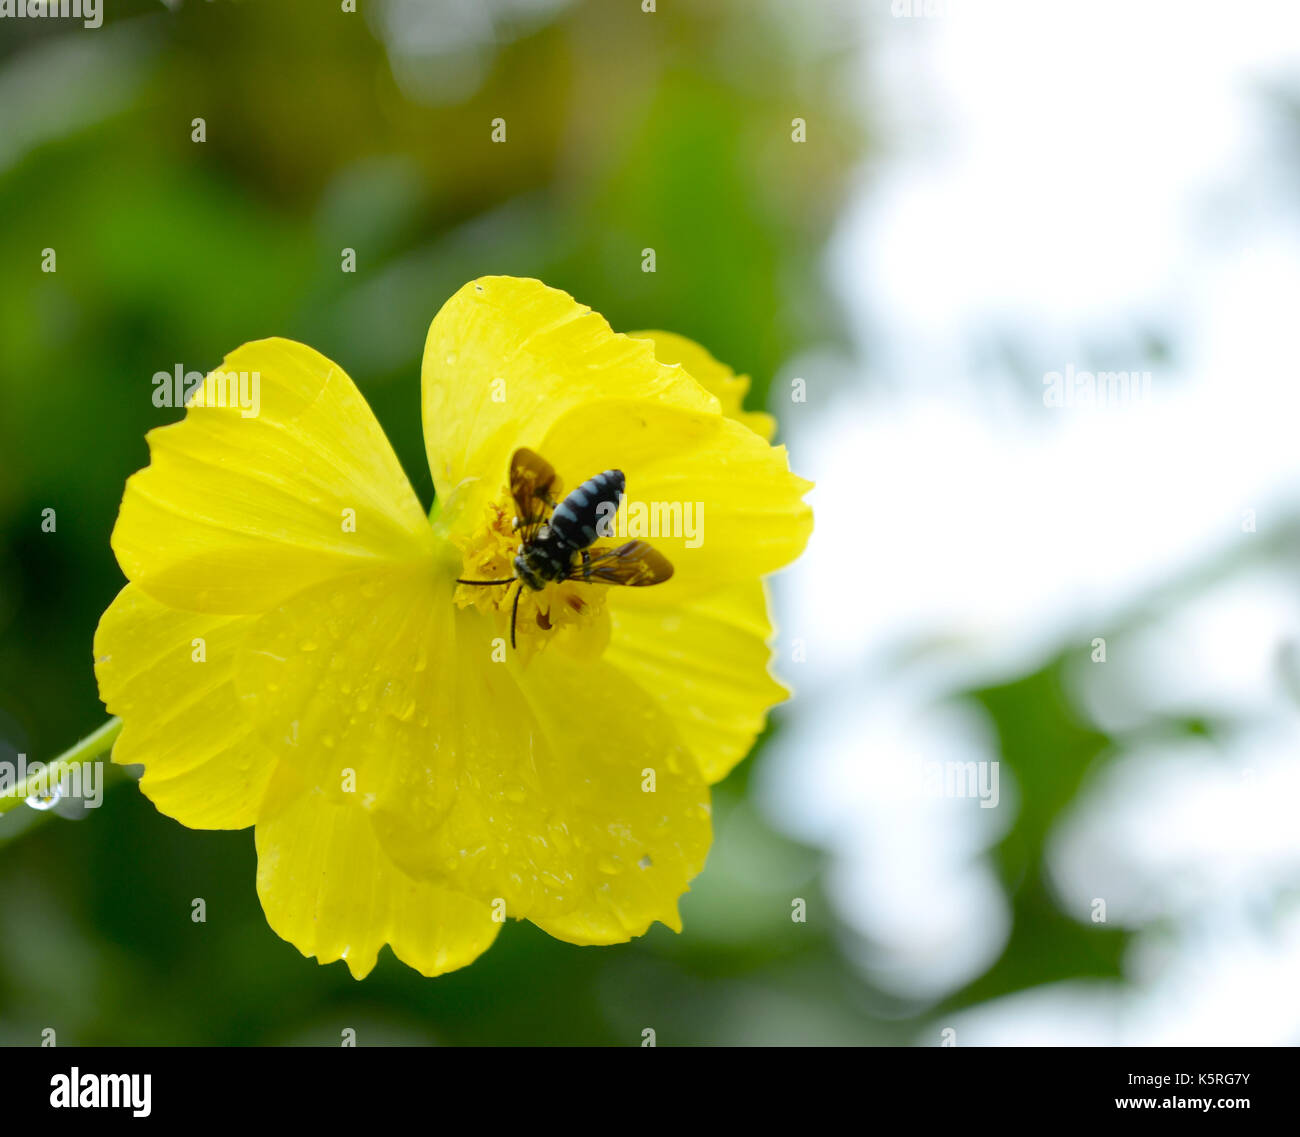 Abeille sur une fleur jaune avec des gouttes d'eau après la pluie contre un arrière-plan vert dans le jardin. Banque D'Images